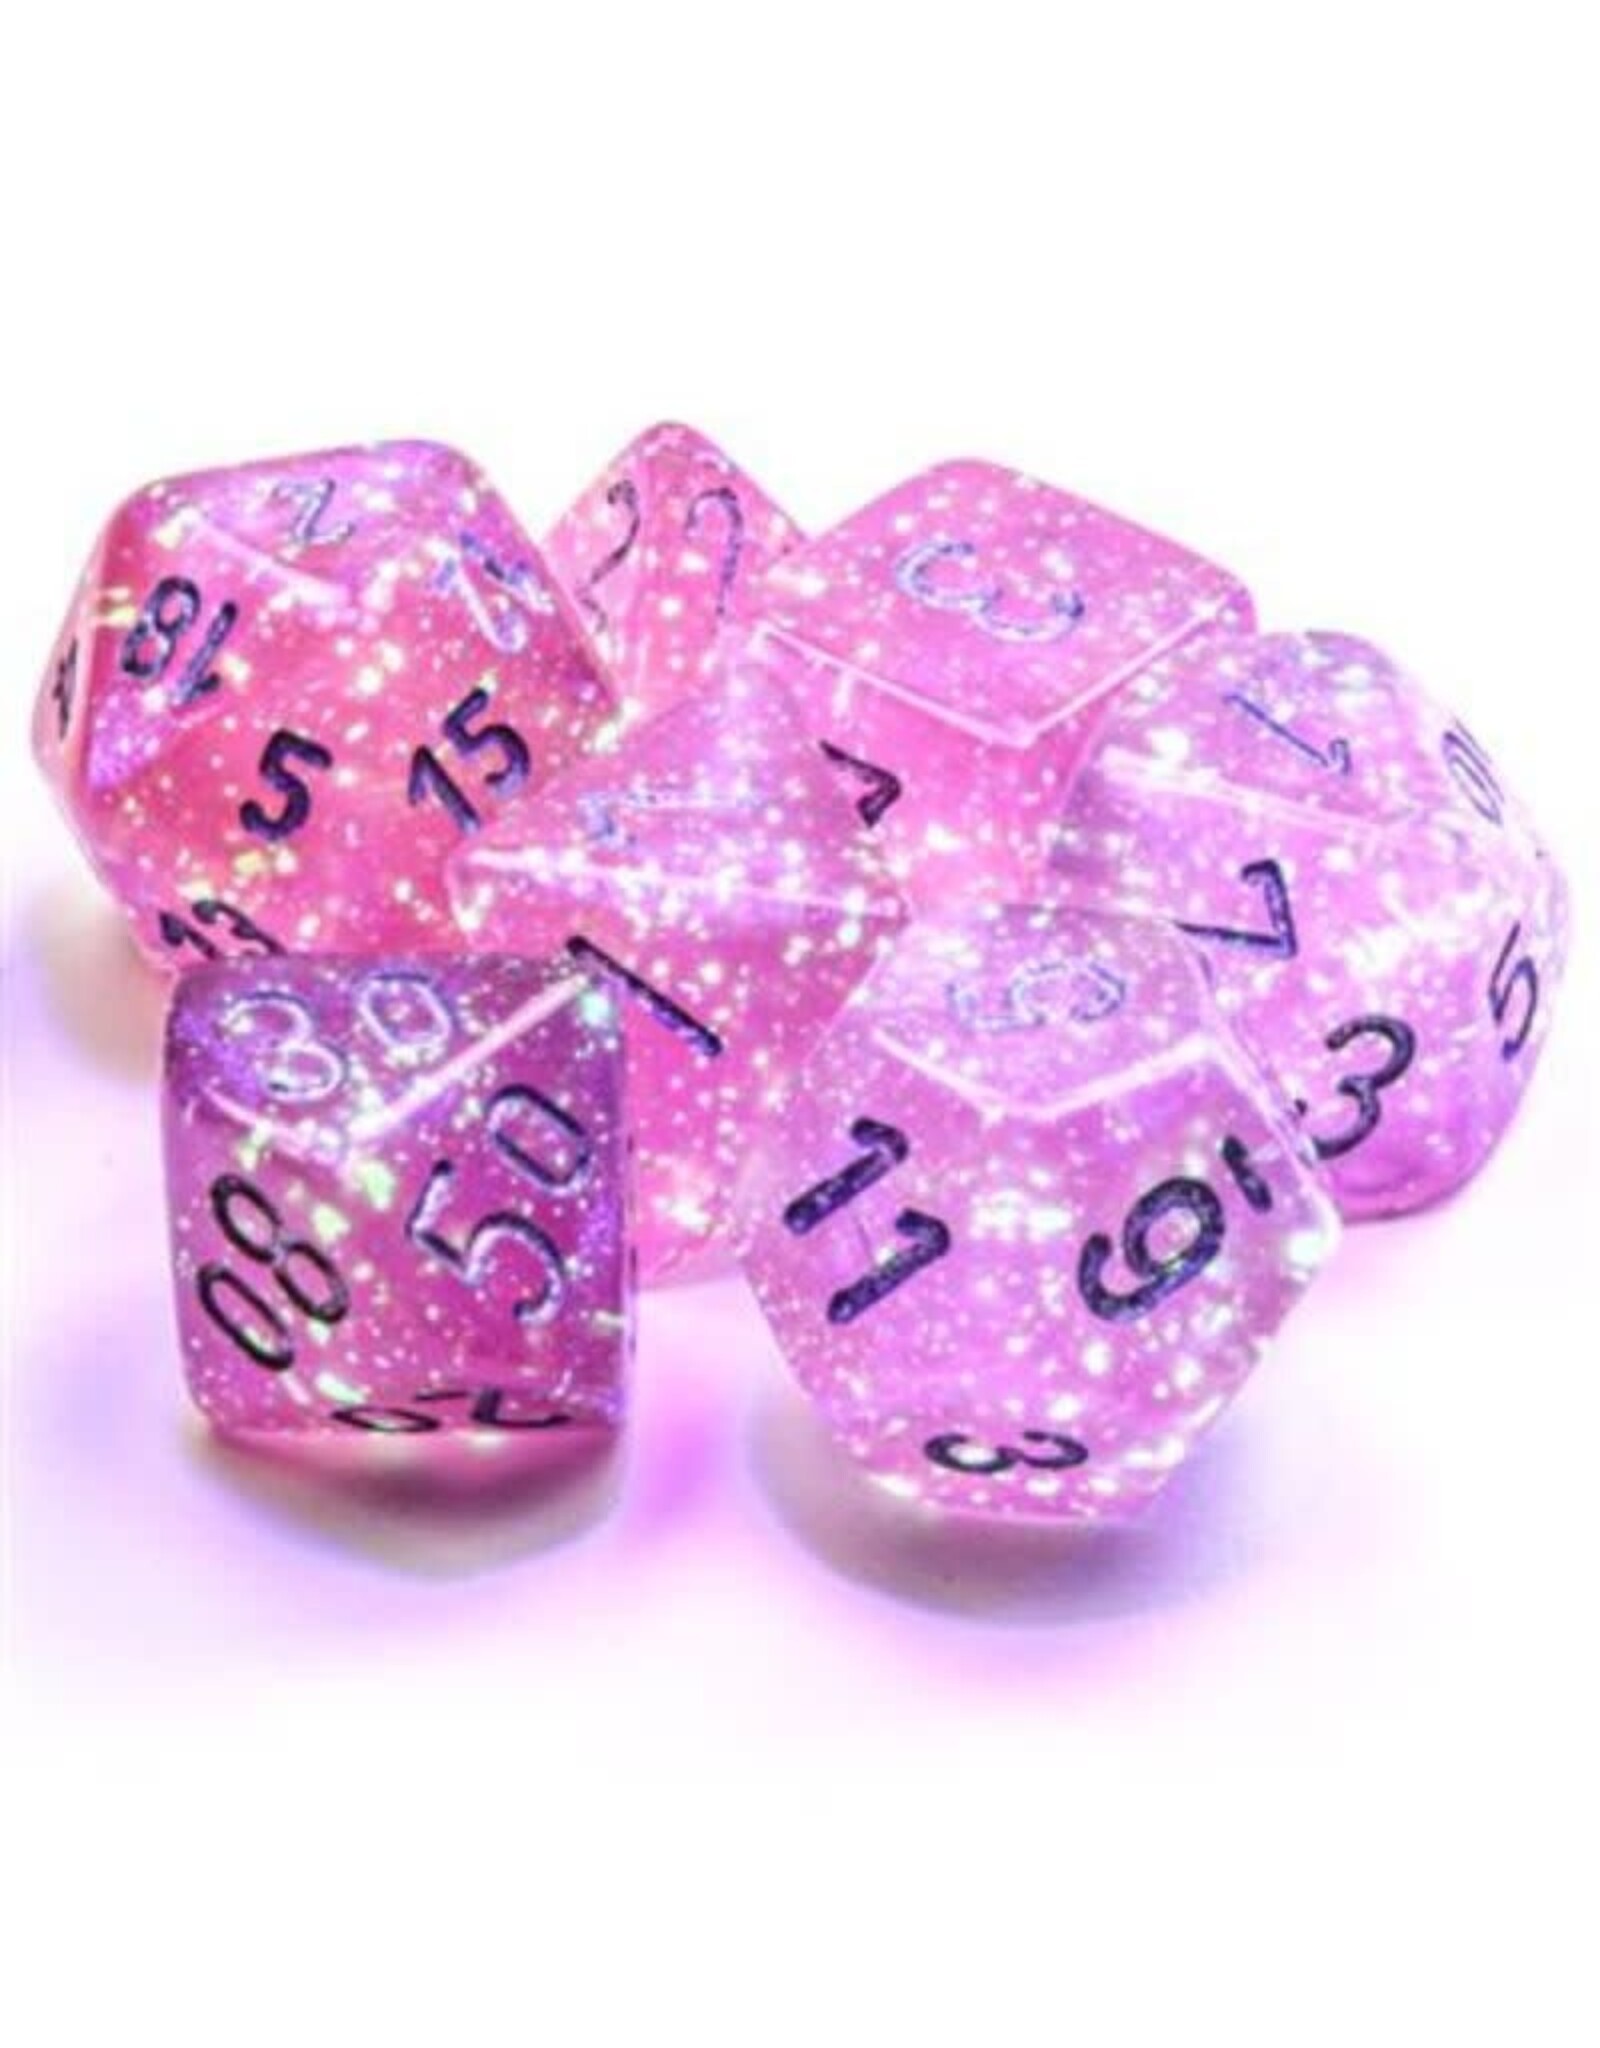 Polyhedral Dice Set: Luminary Borealis - Pink w/ Silver